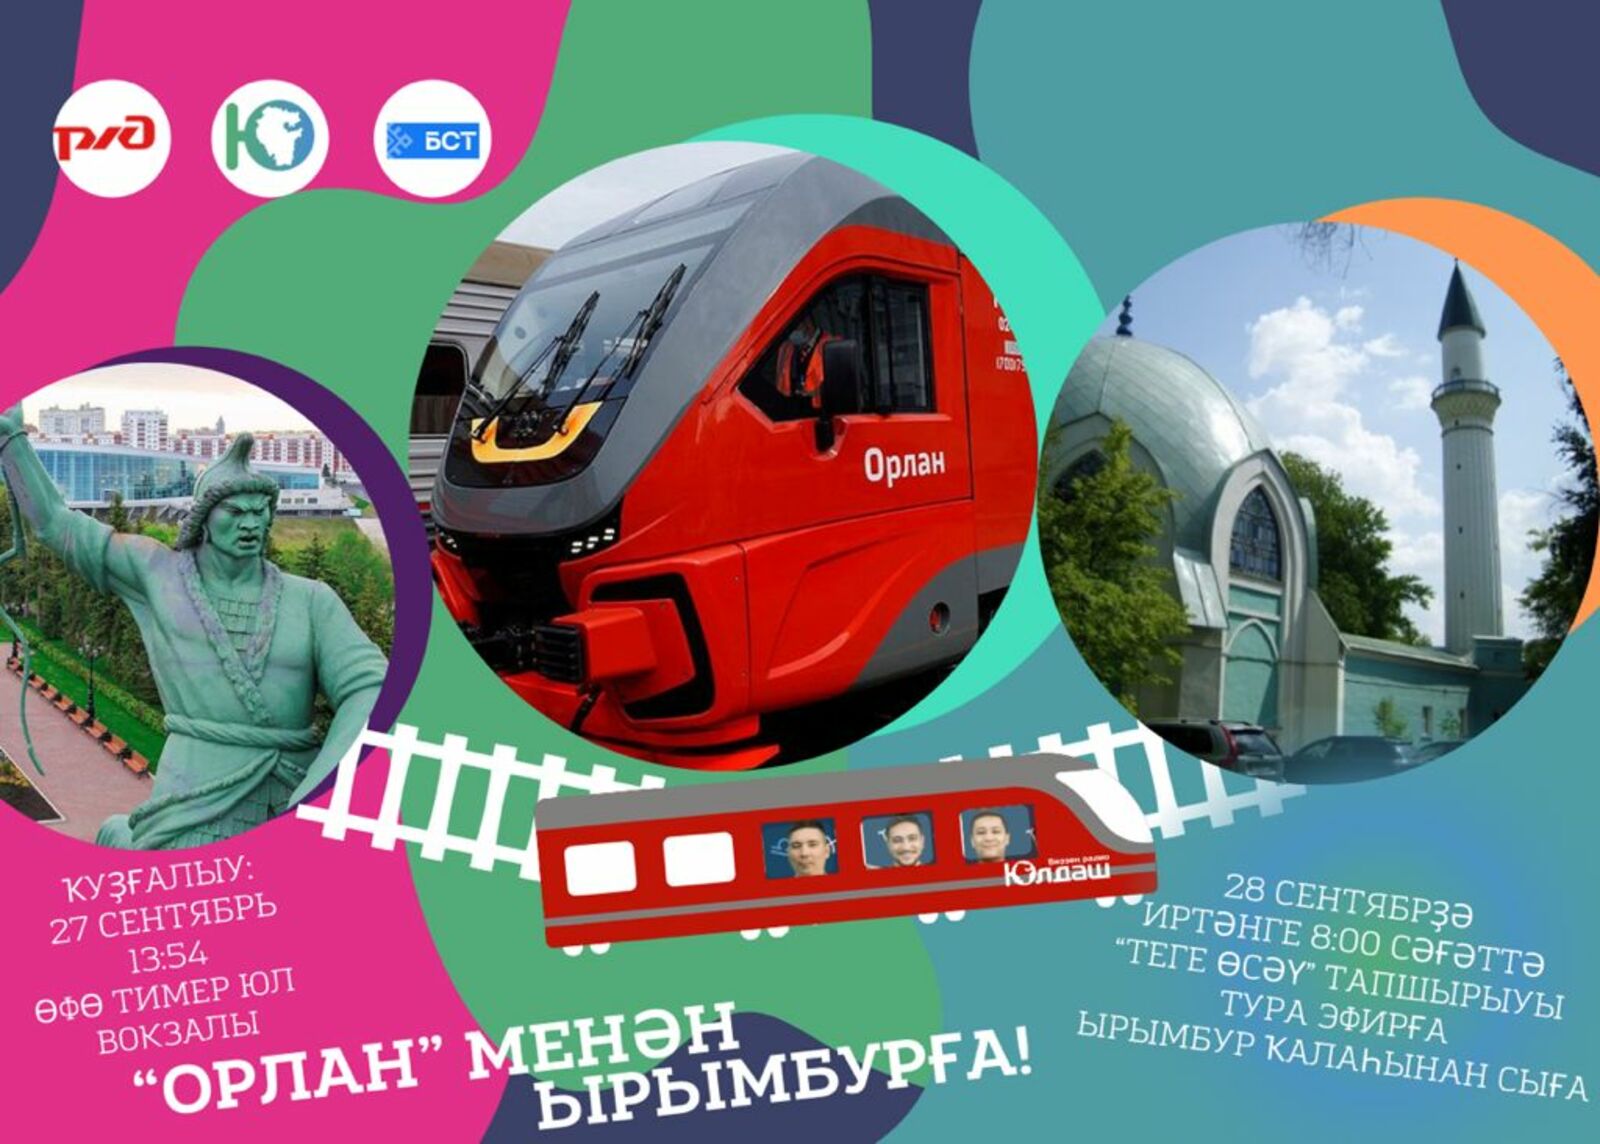 Коллектив радио “Юлдаш” Башкортостана выйдет в прямой эфир с поезда “Орлан”